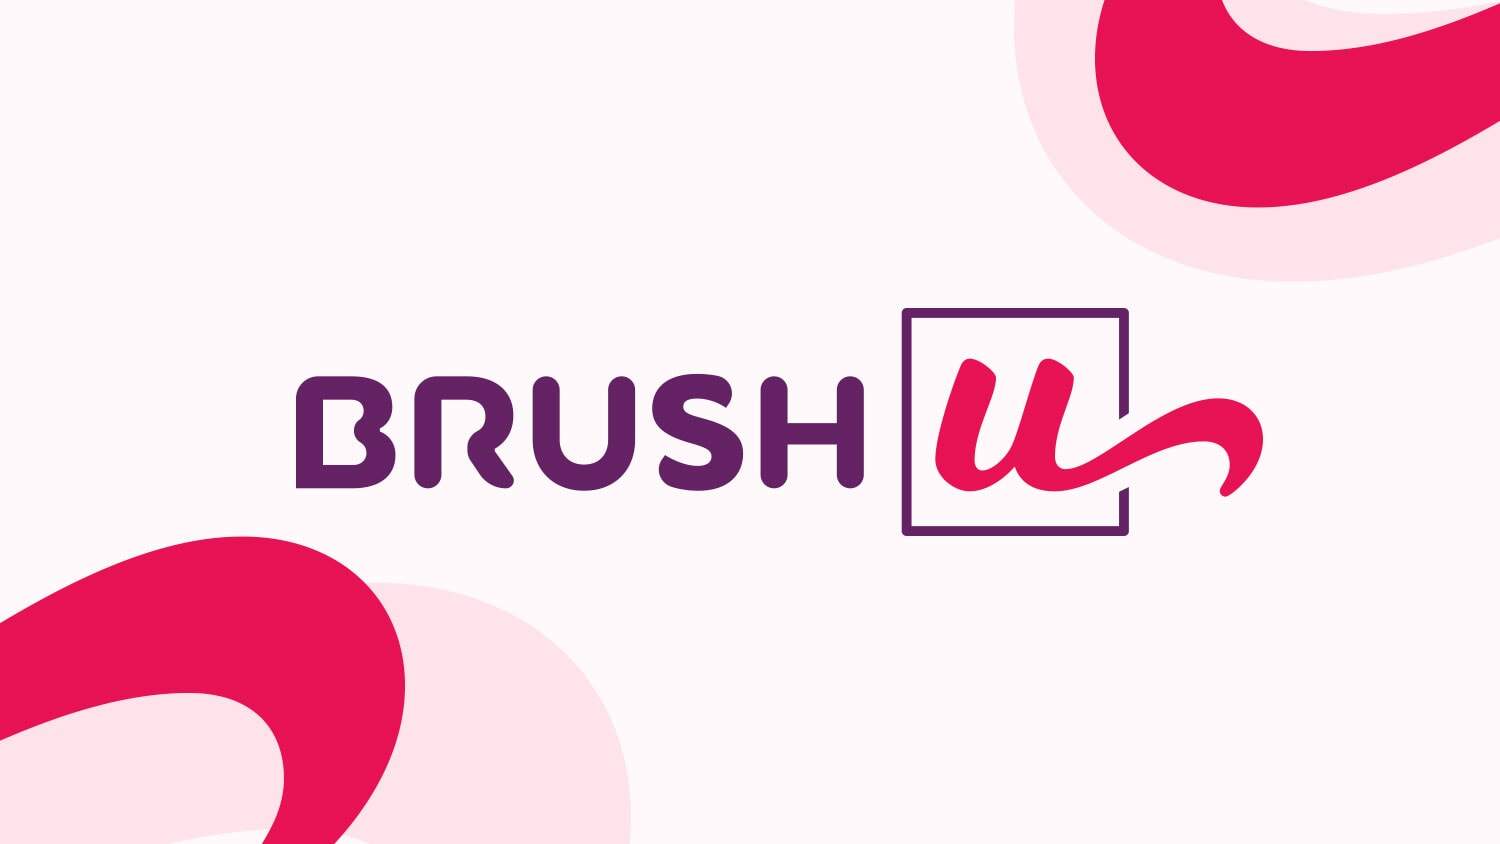 Capa - Brush U